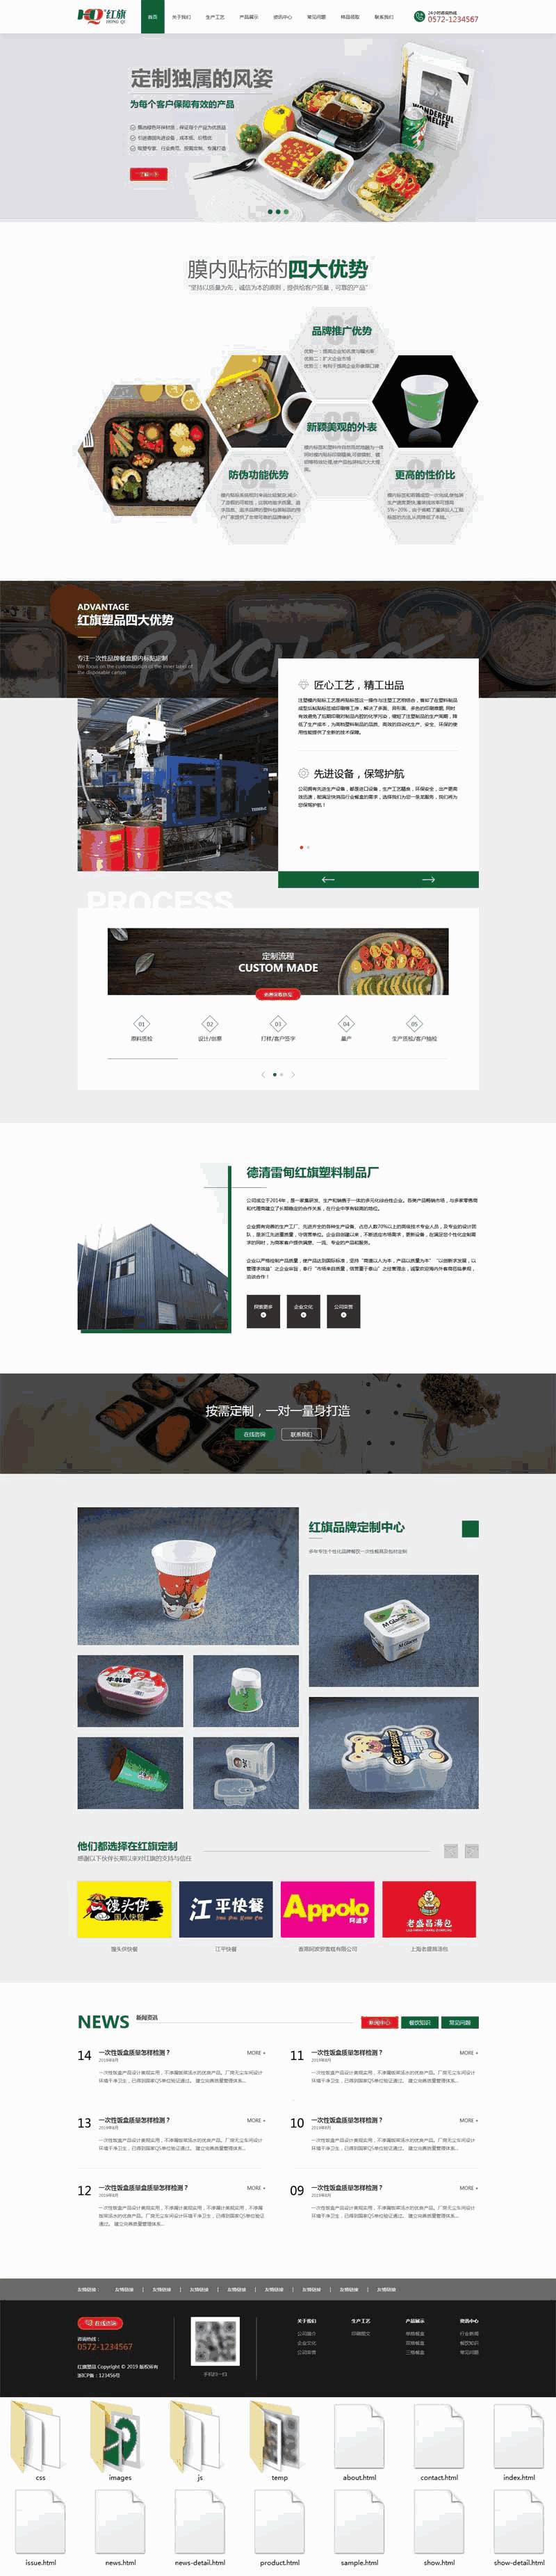 绿色环保样品包装设计公司手机网站主题模板下载演示图